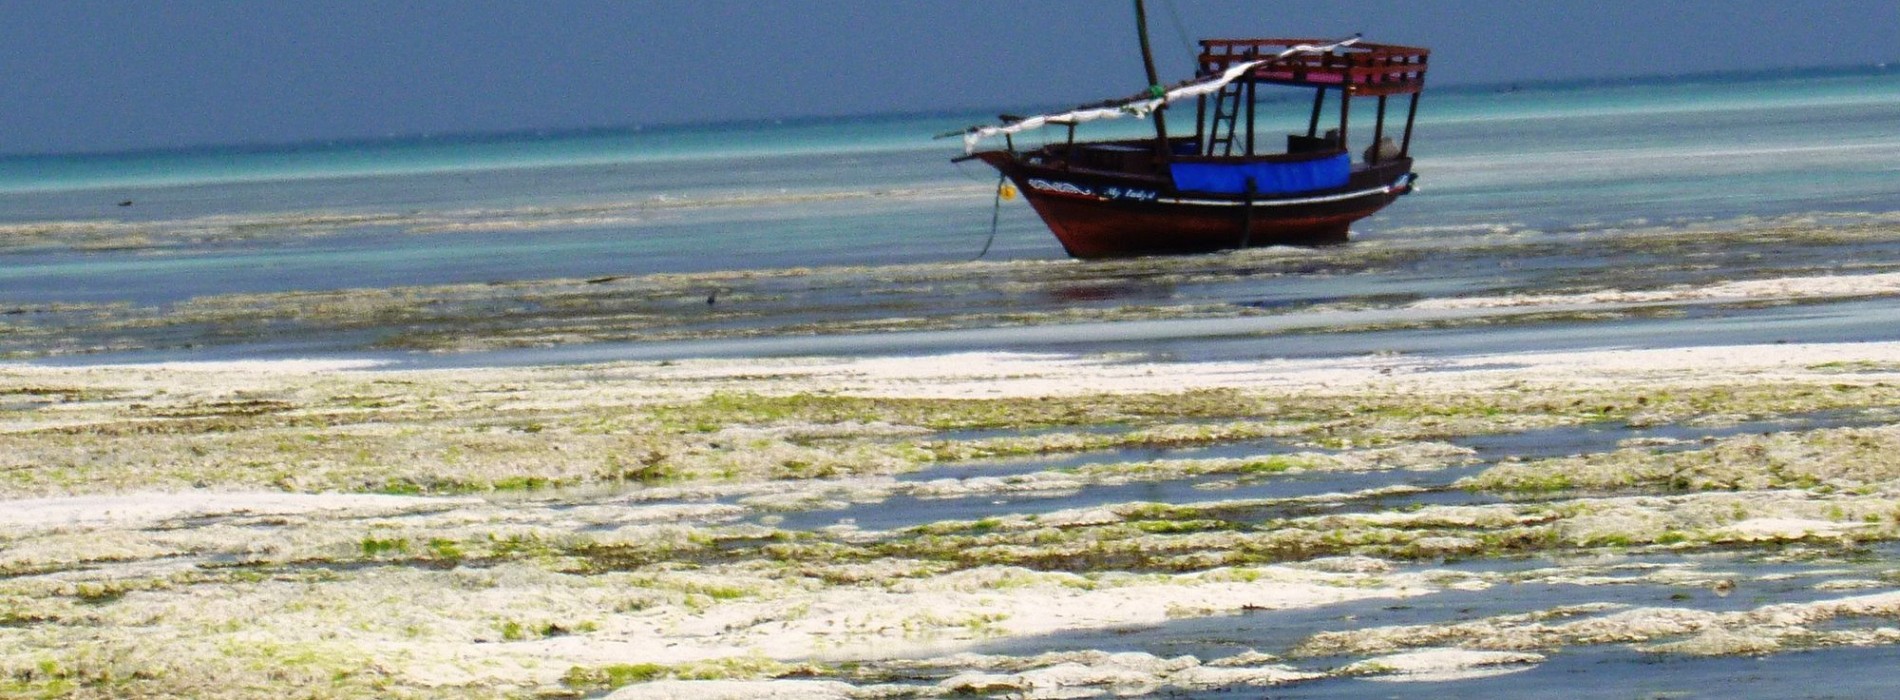 White_sand_beaches_of_Zanzibar.jpg